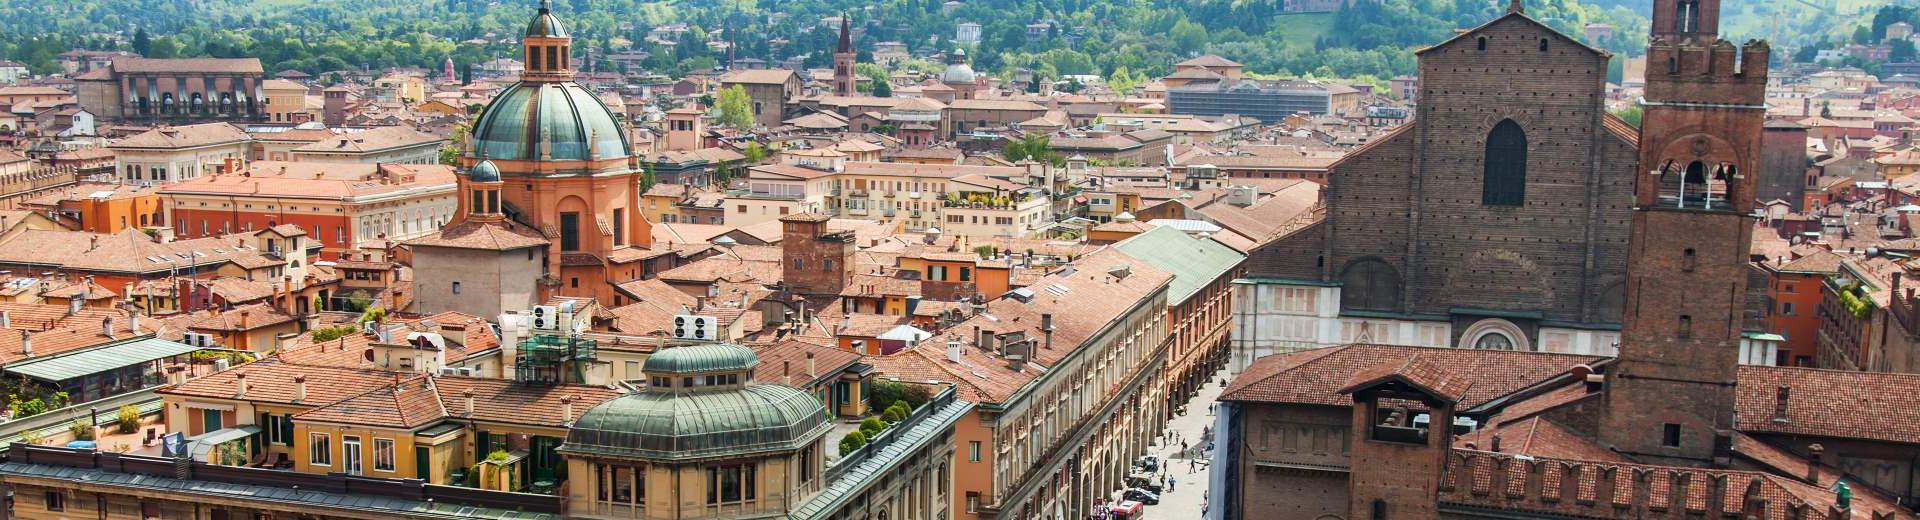 Ferienwohnungen & Ferienhäuser für Urlaub in der Provinz Bologna - Casamundo